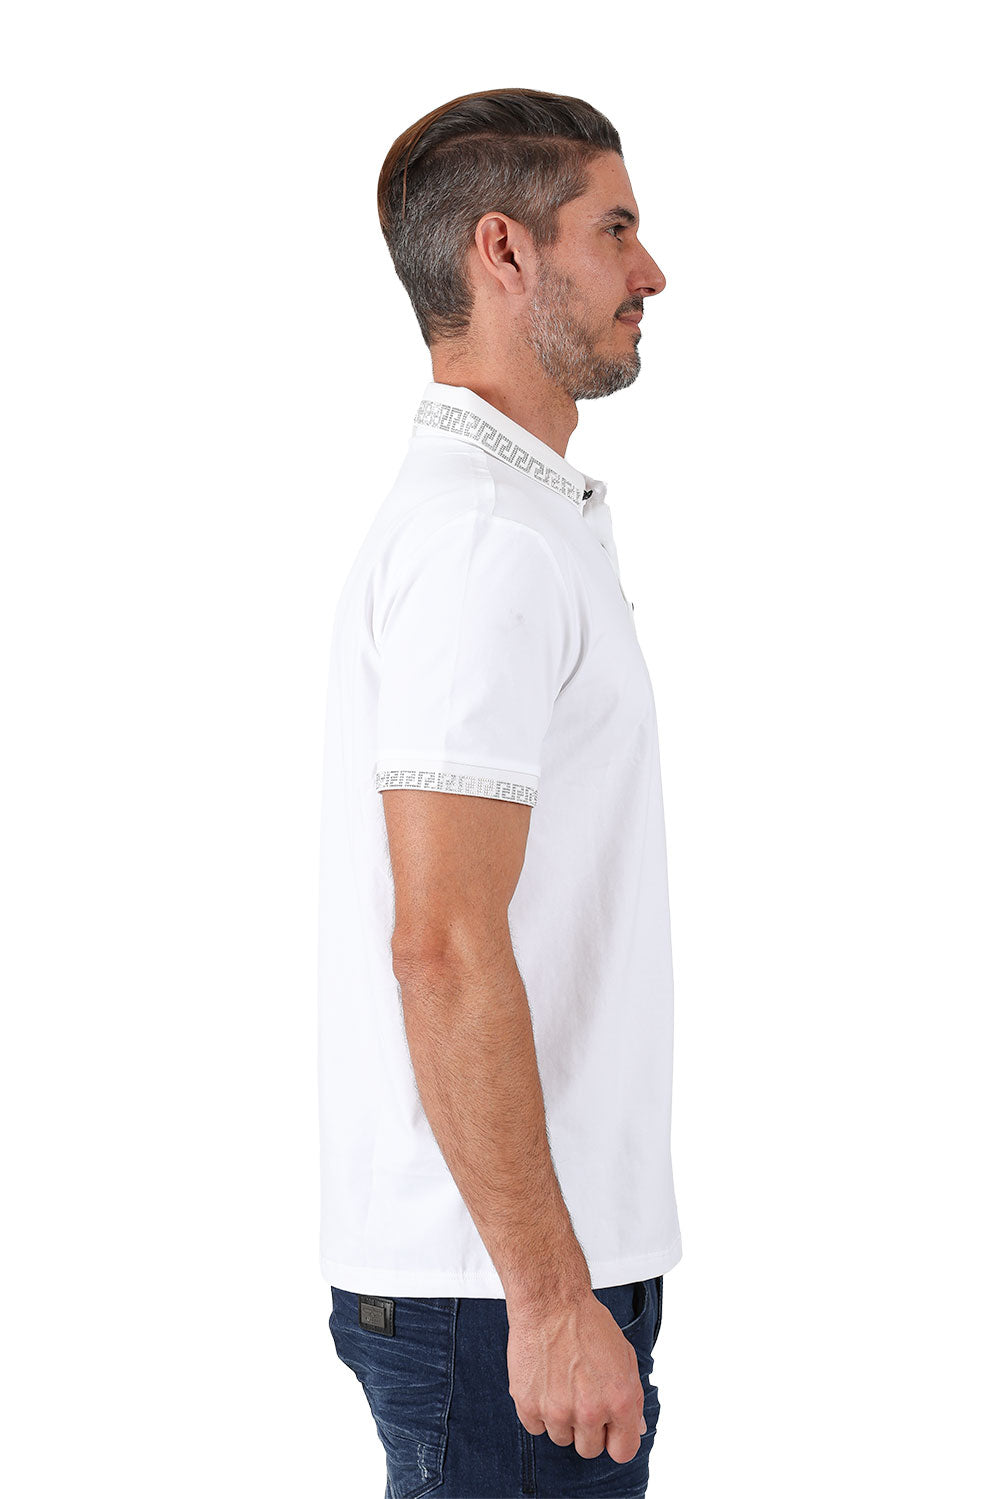 BARABAS men's rhinestone Greek key pattern polo shirt PS118 White Silver